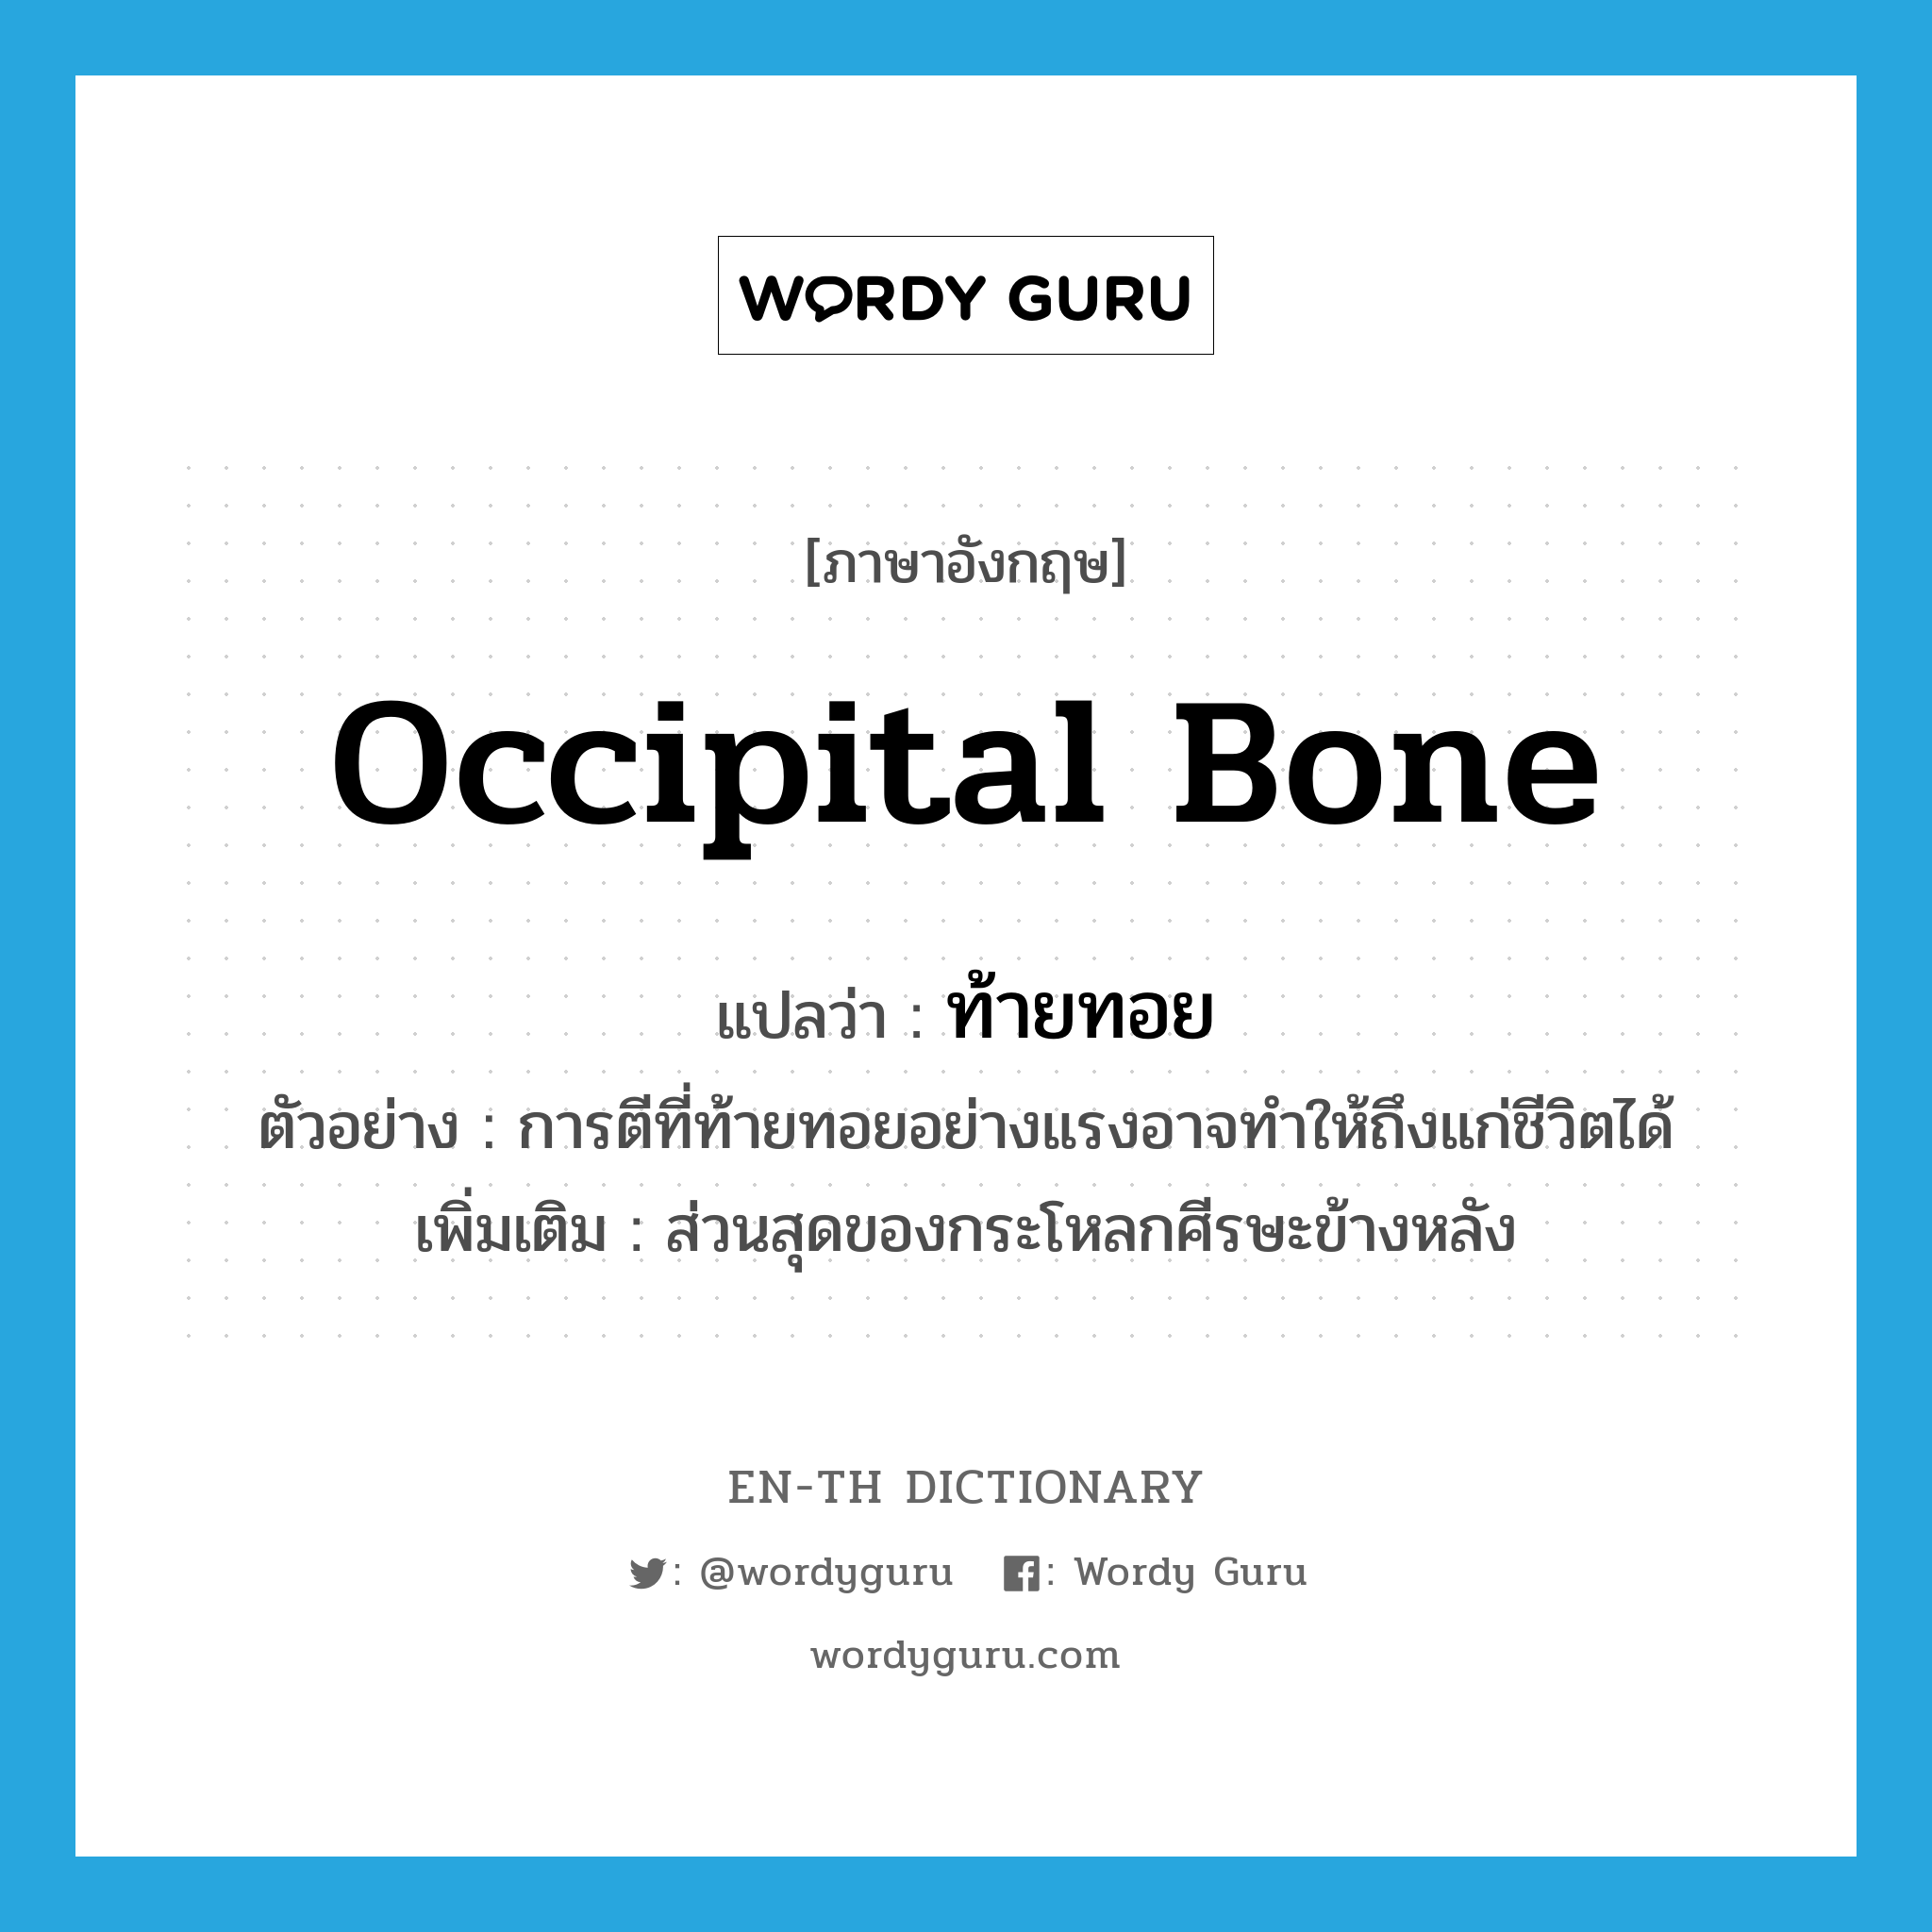 occipital bone แปลว่า?, คำศัพท์ภาษาอังกฤษ occipital bone แปลว่า ท้ายทอย ประเภท N ตัวอย่าง การตีที่ท้ายทอยอย่างแรงอาจทำให้ถึงแก่ชีวิตได้ เพิ่มเติม ส่วนสุดของกระโหลกศีรษะข้างหลัง หมวด N